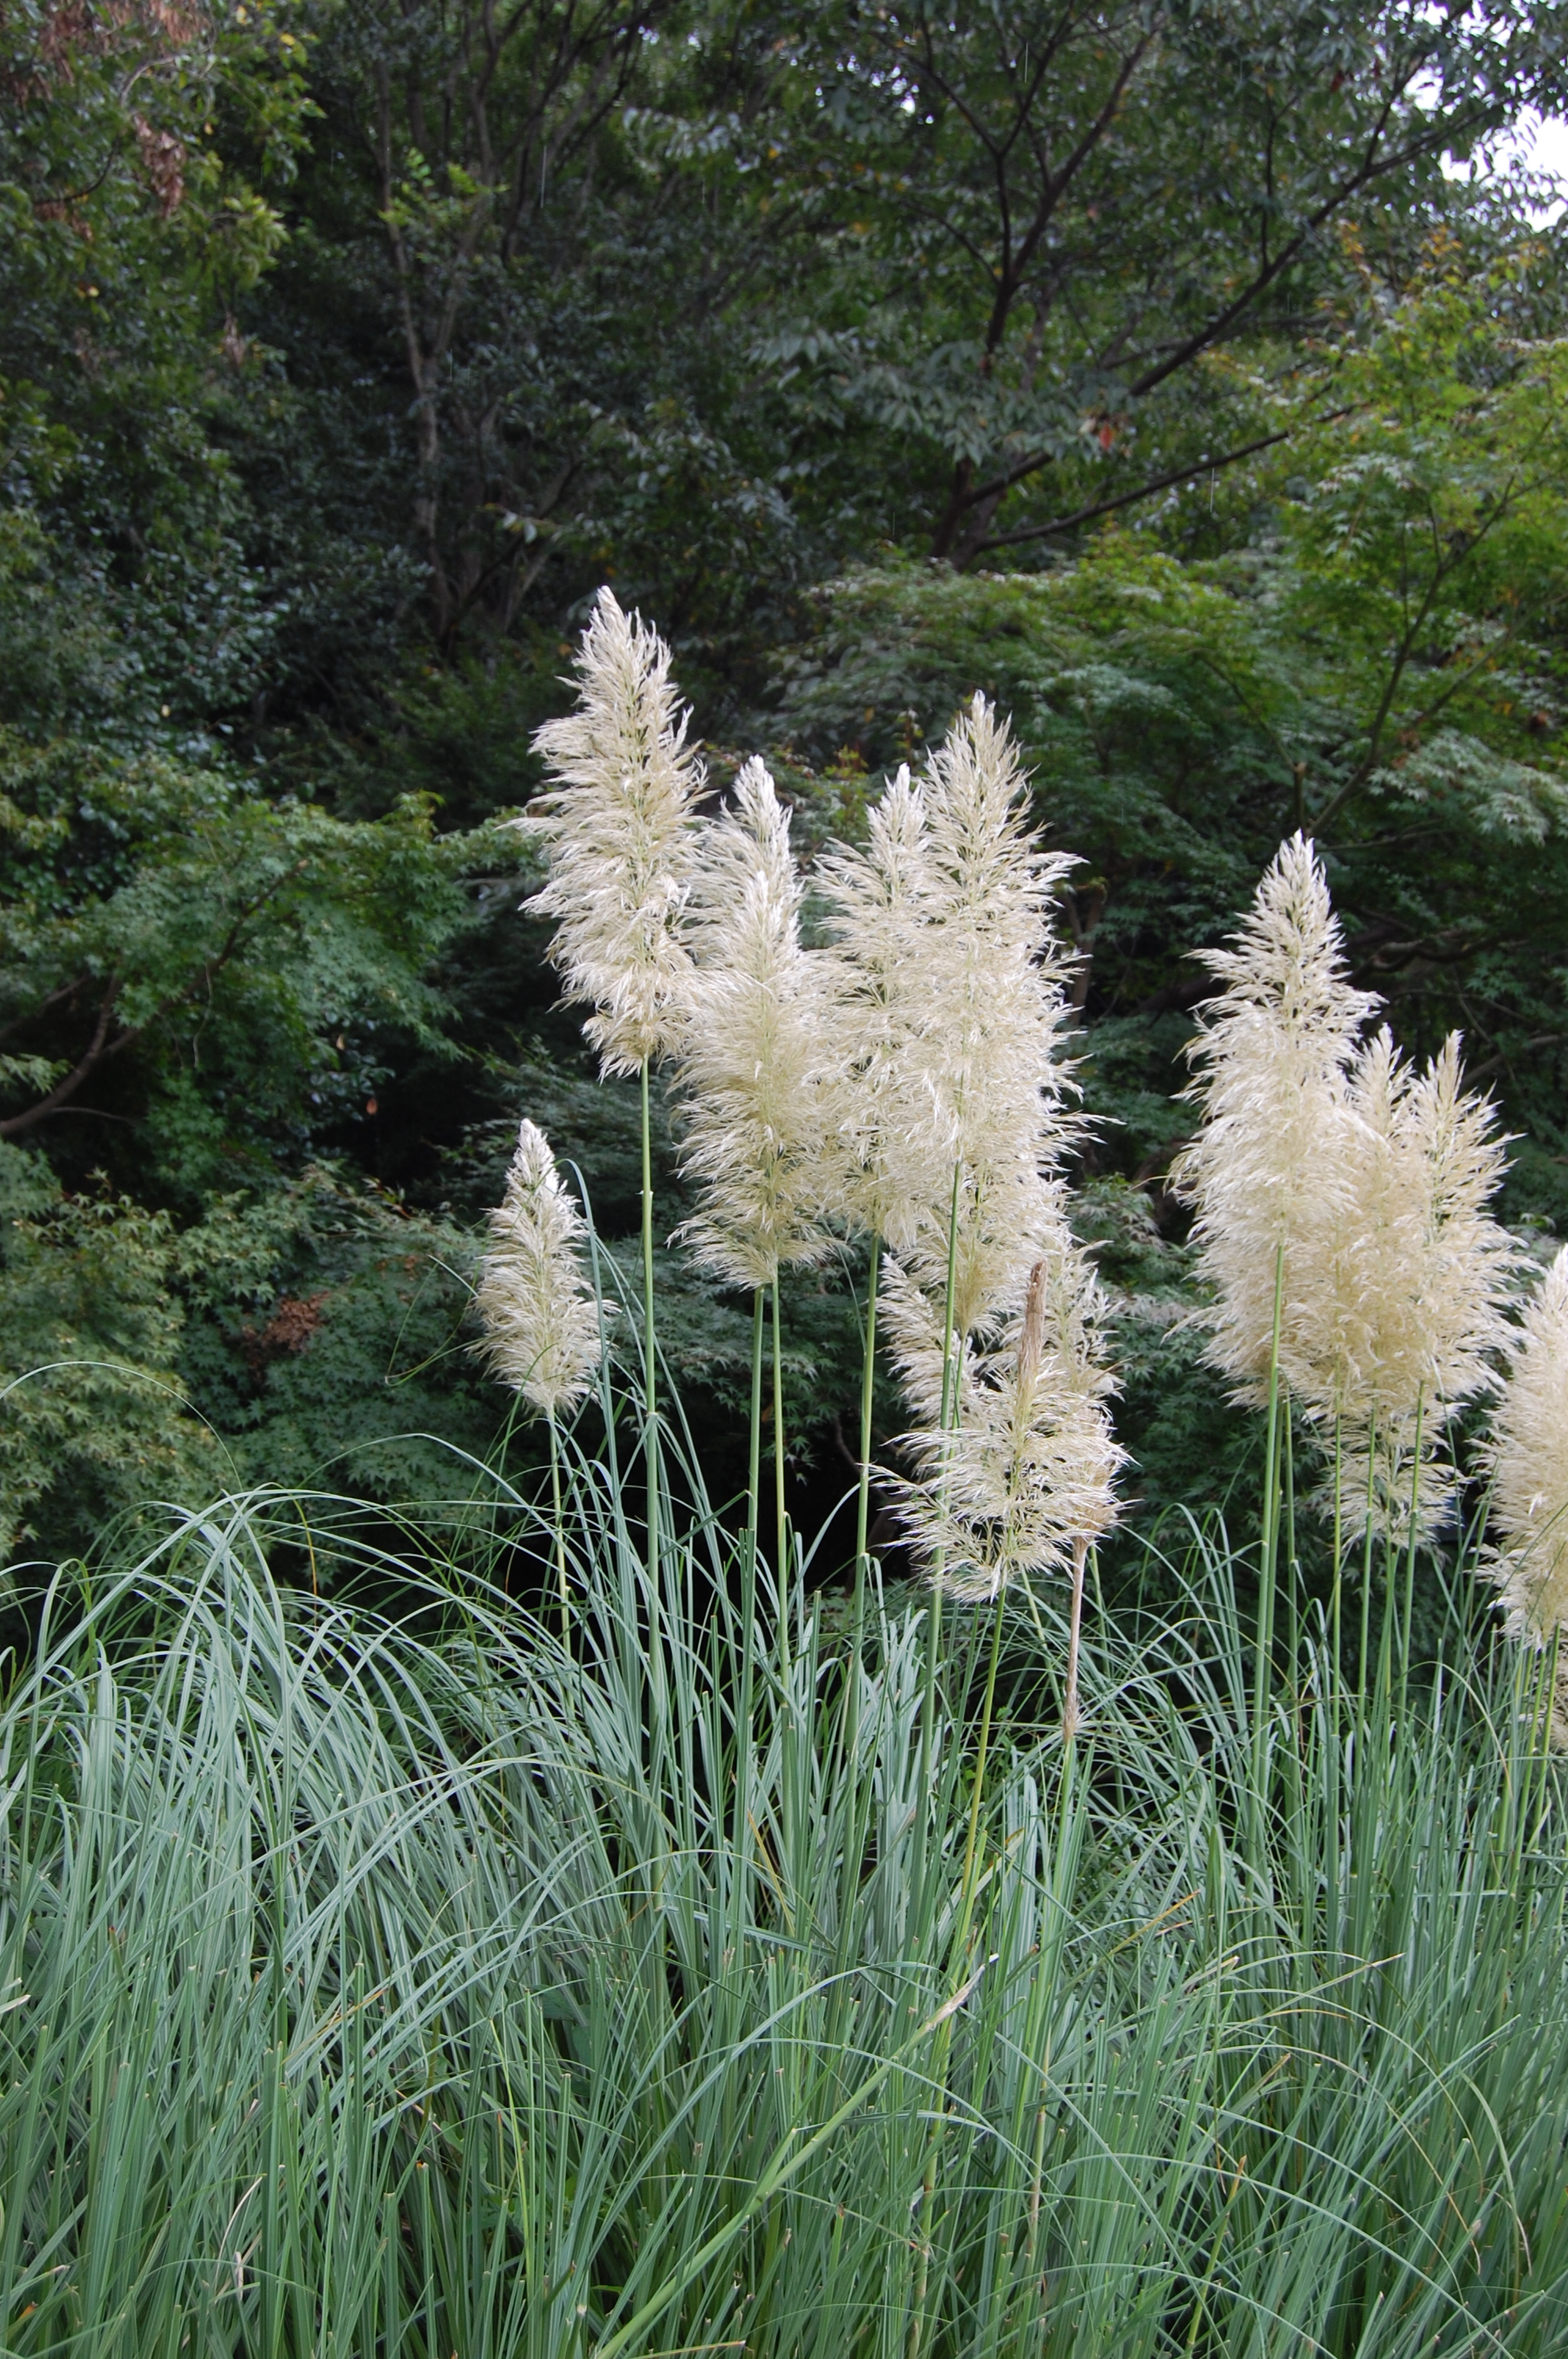 Tall Grass: Photo by Sharon Burtner